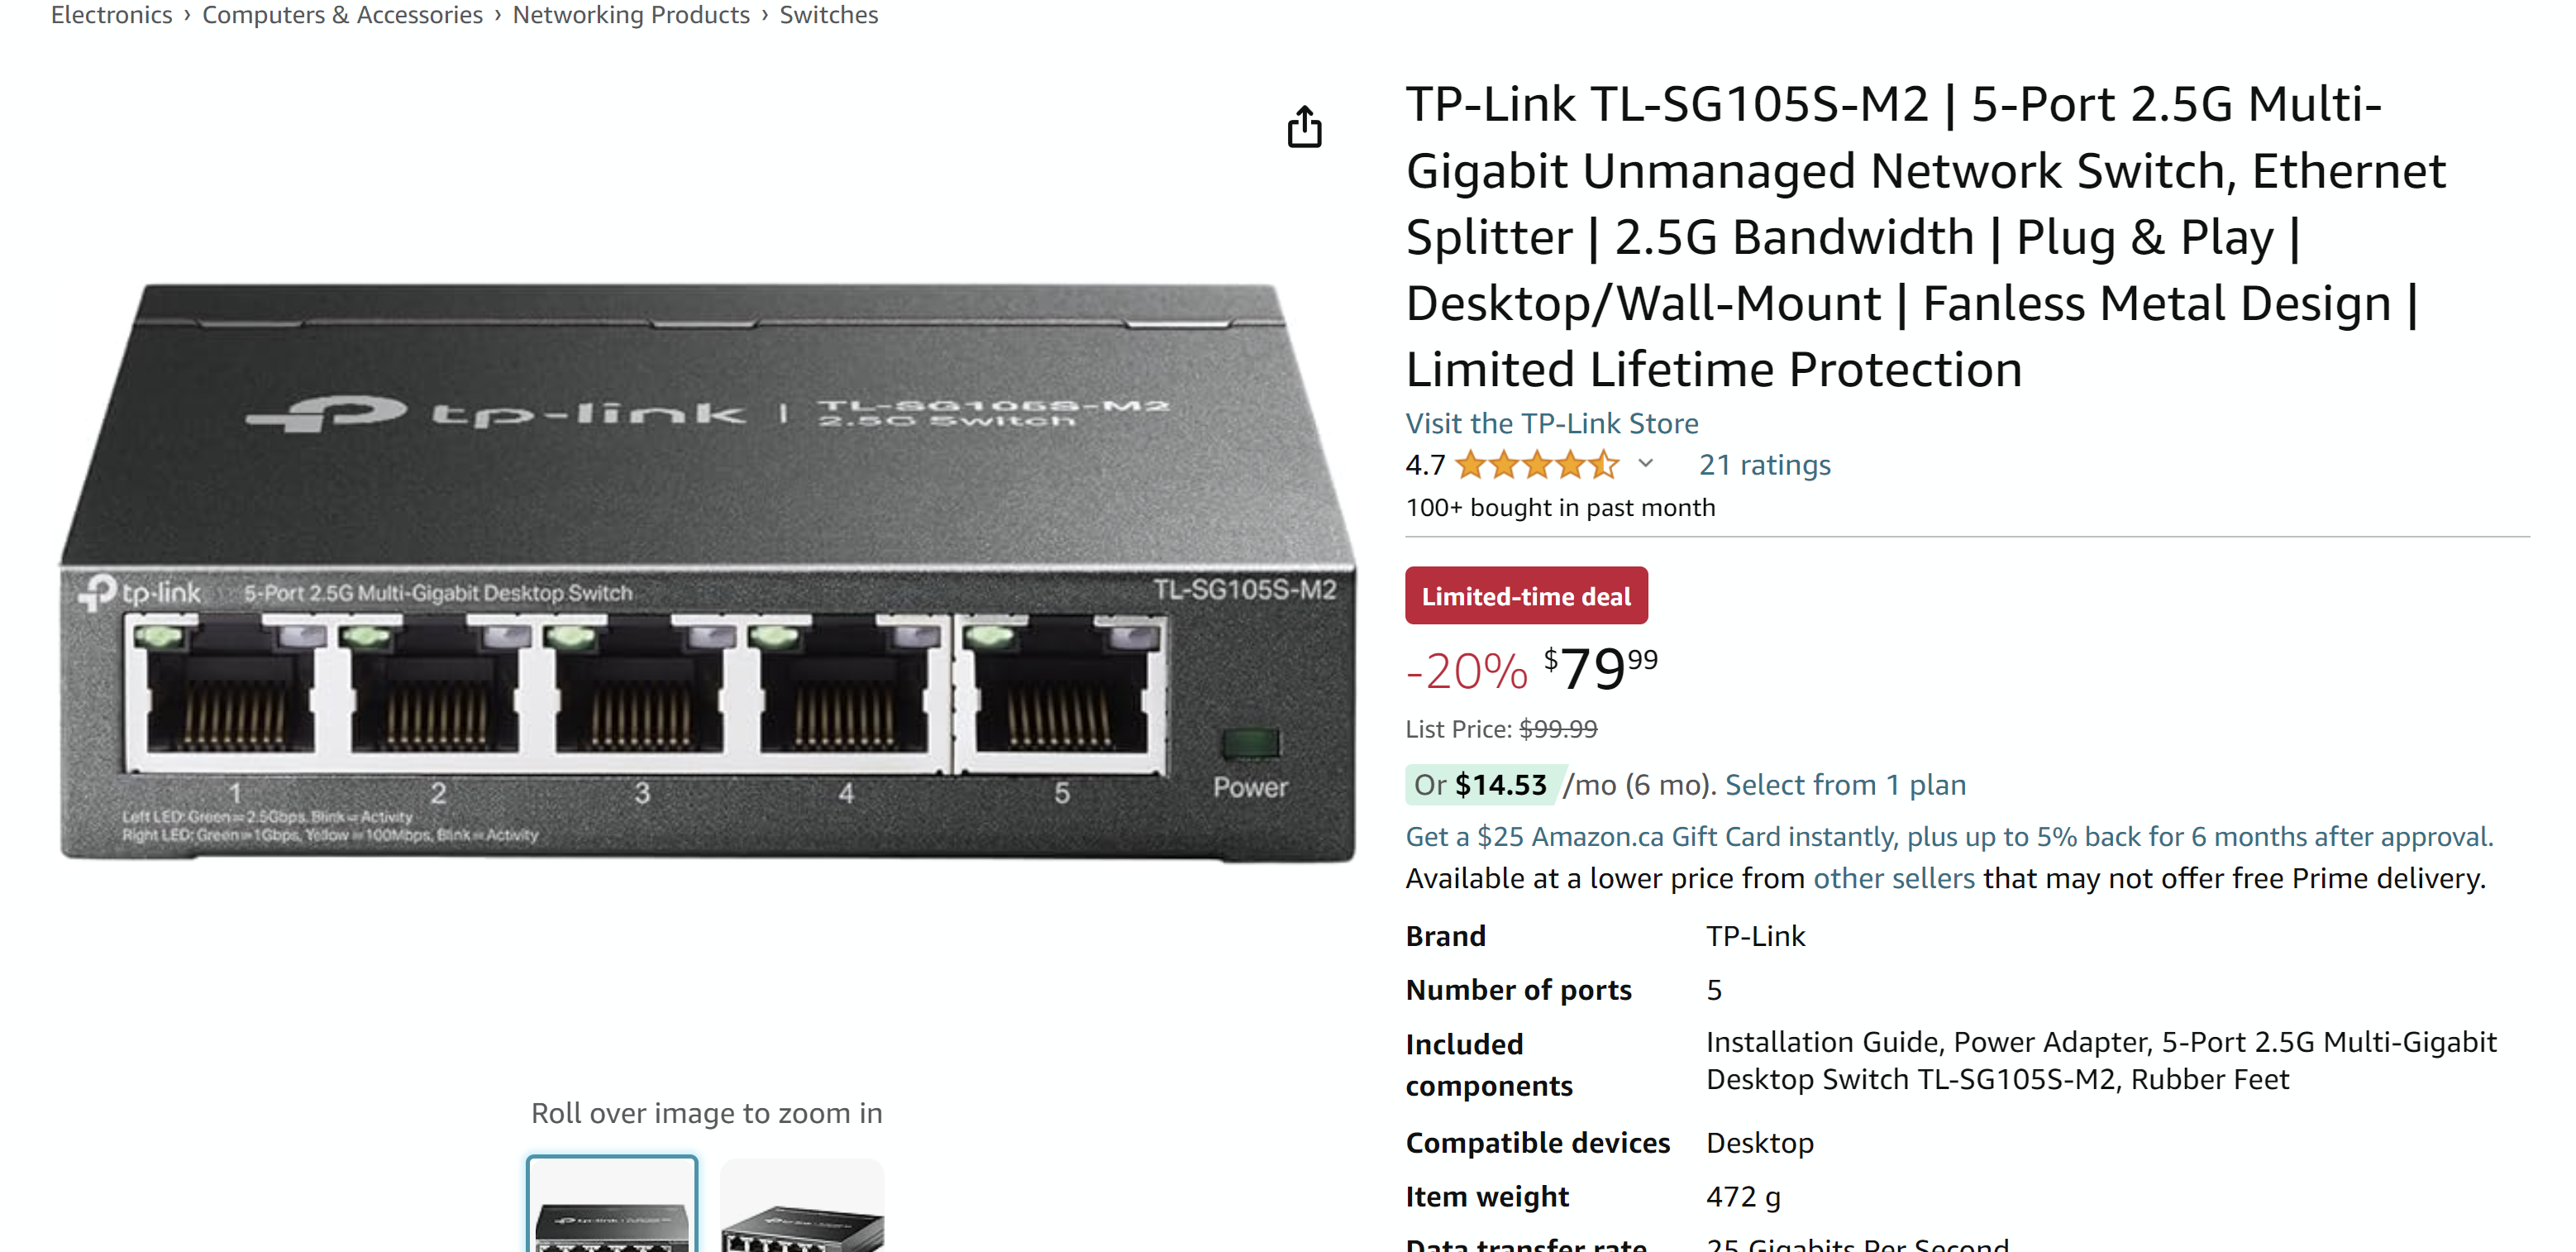 TP-Link TL-SG105S-M2 | 5-Port 2.5G Multi-Gigabit Unmanaged Network Switch, Ethernet Splitter